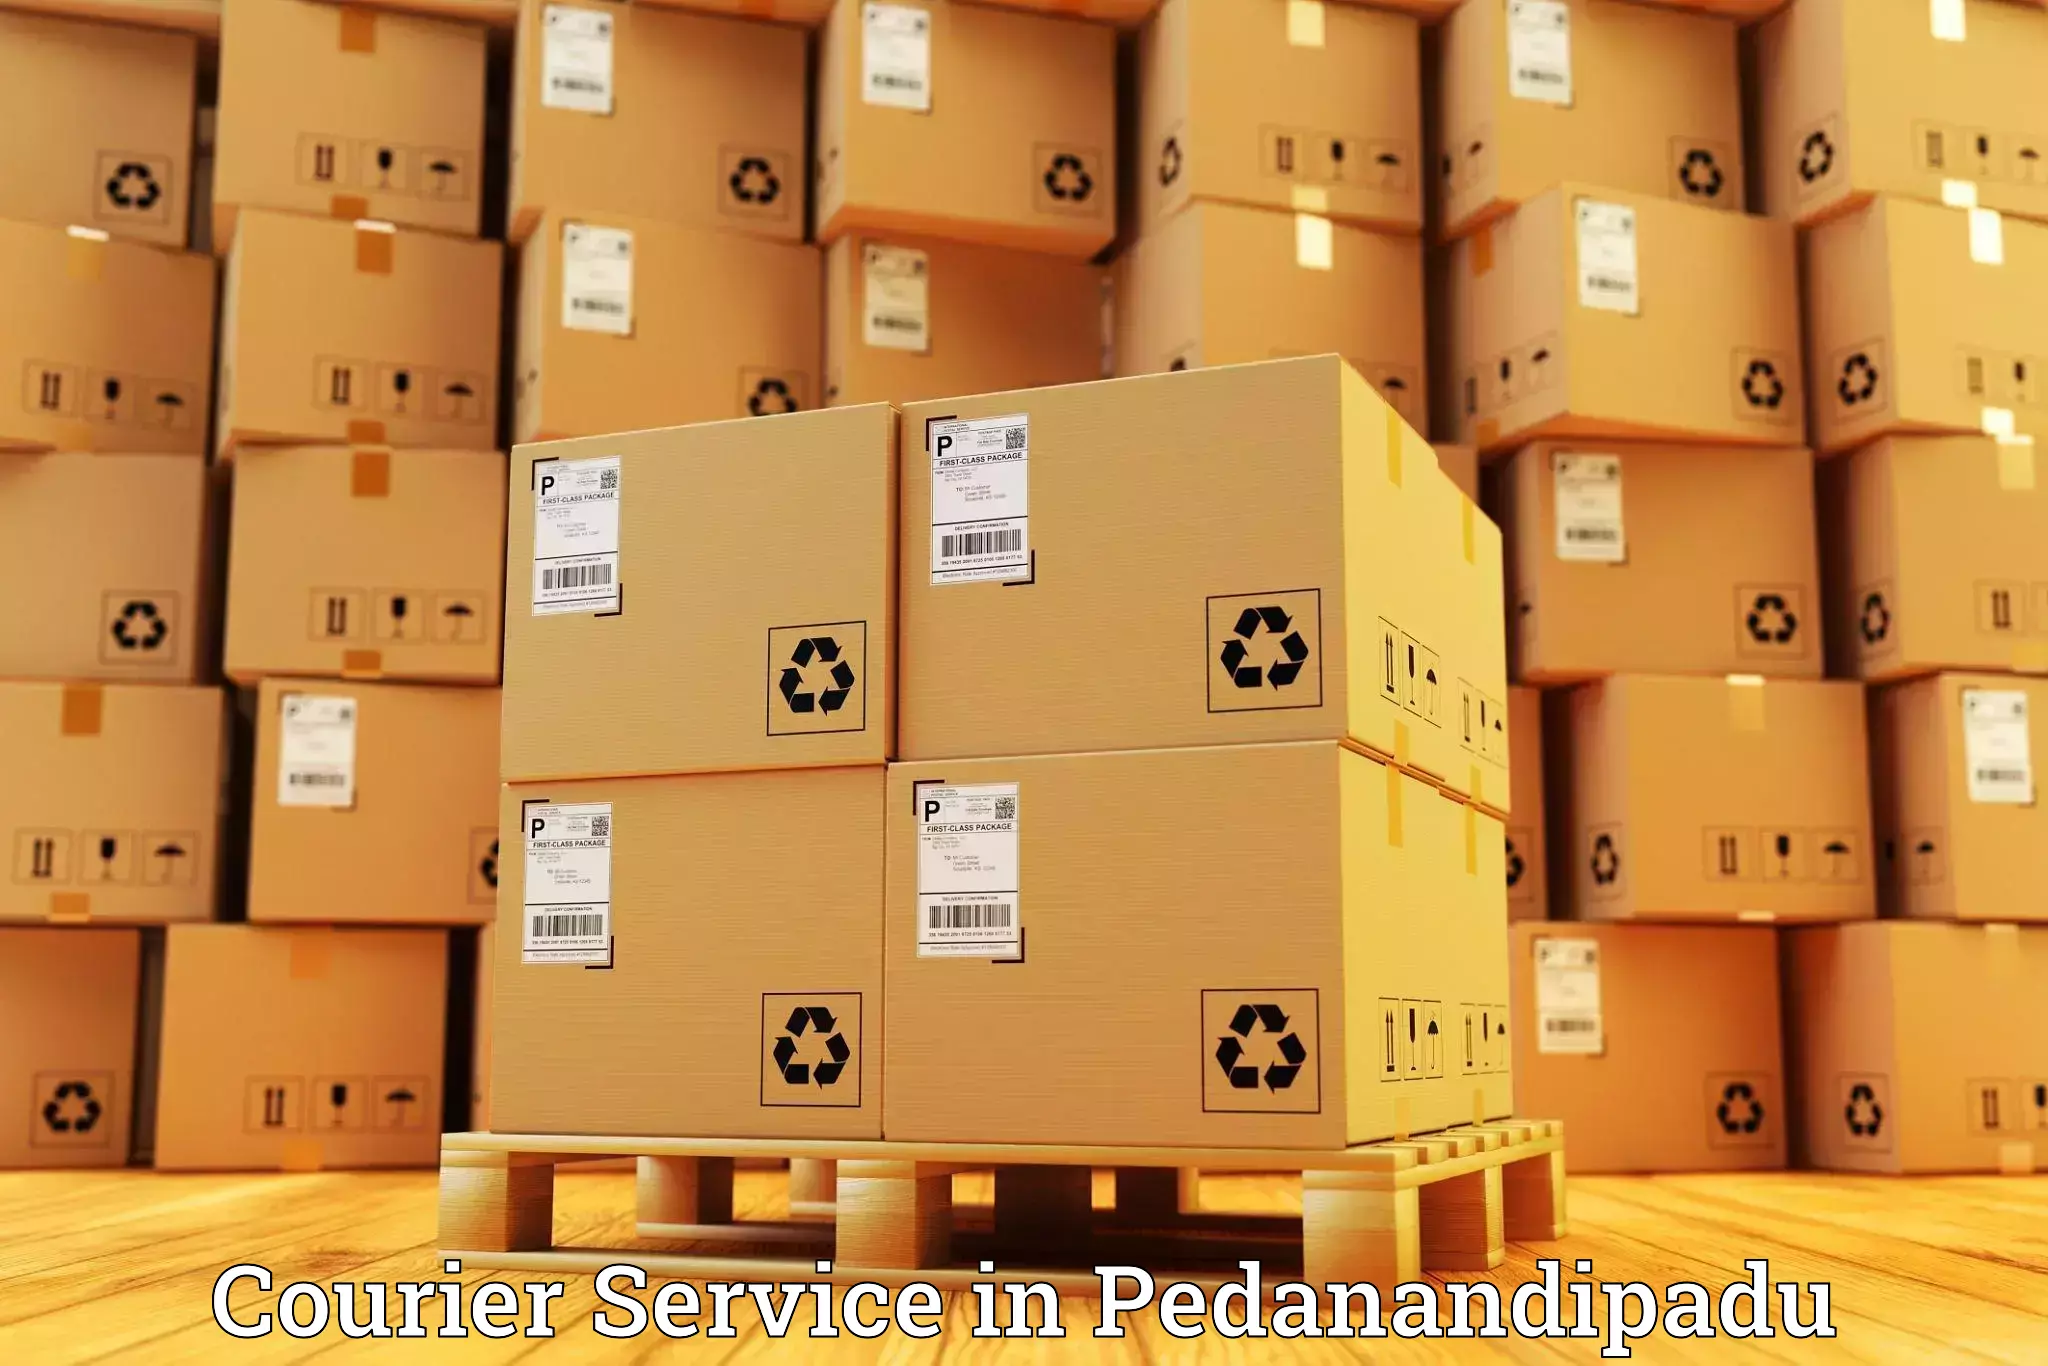 Modern courier technology in Pedanandipadu